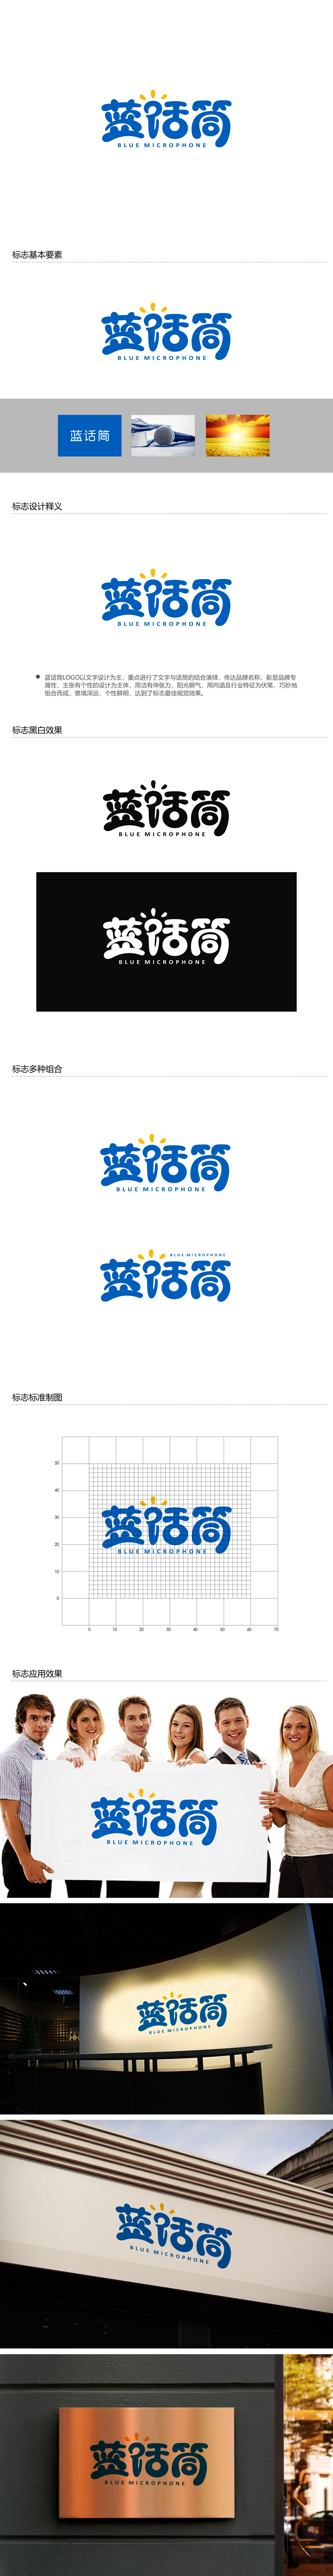 郑国麟的蓝话筒【重新整理设计需求】logo设计